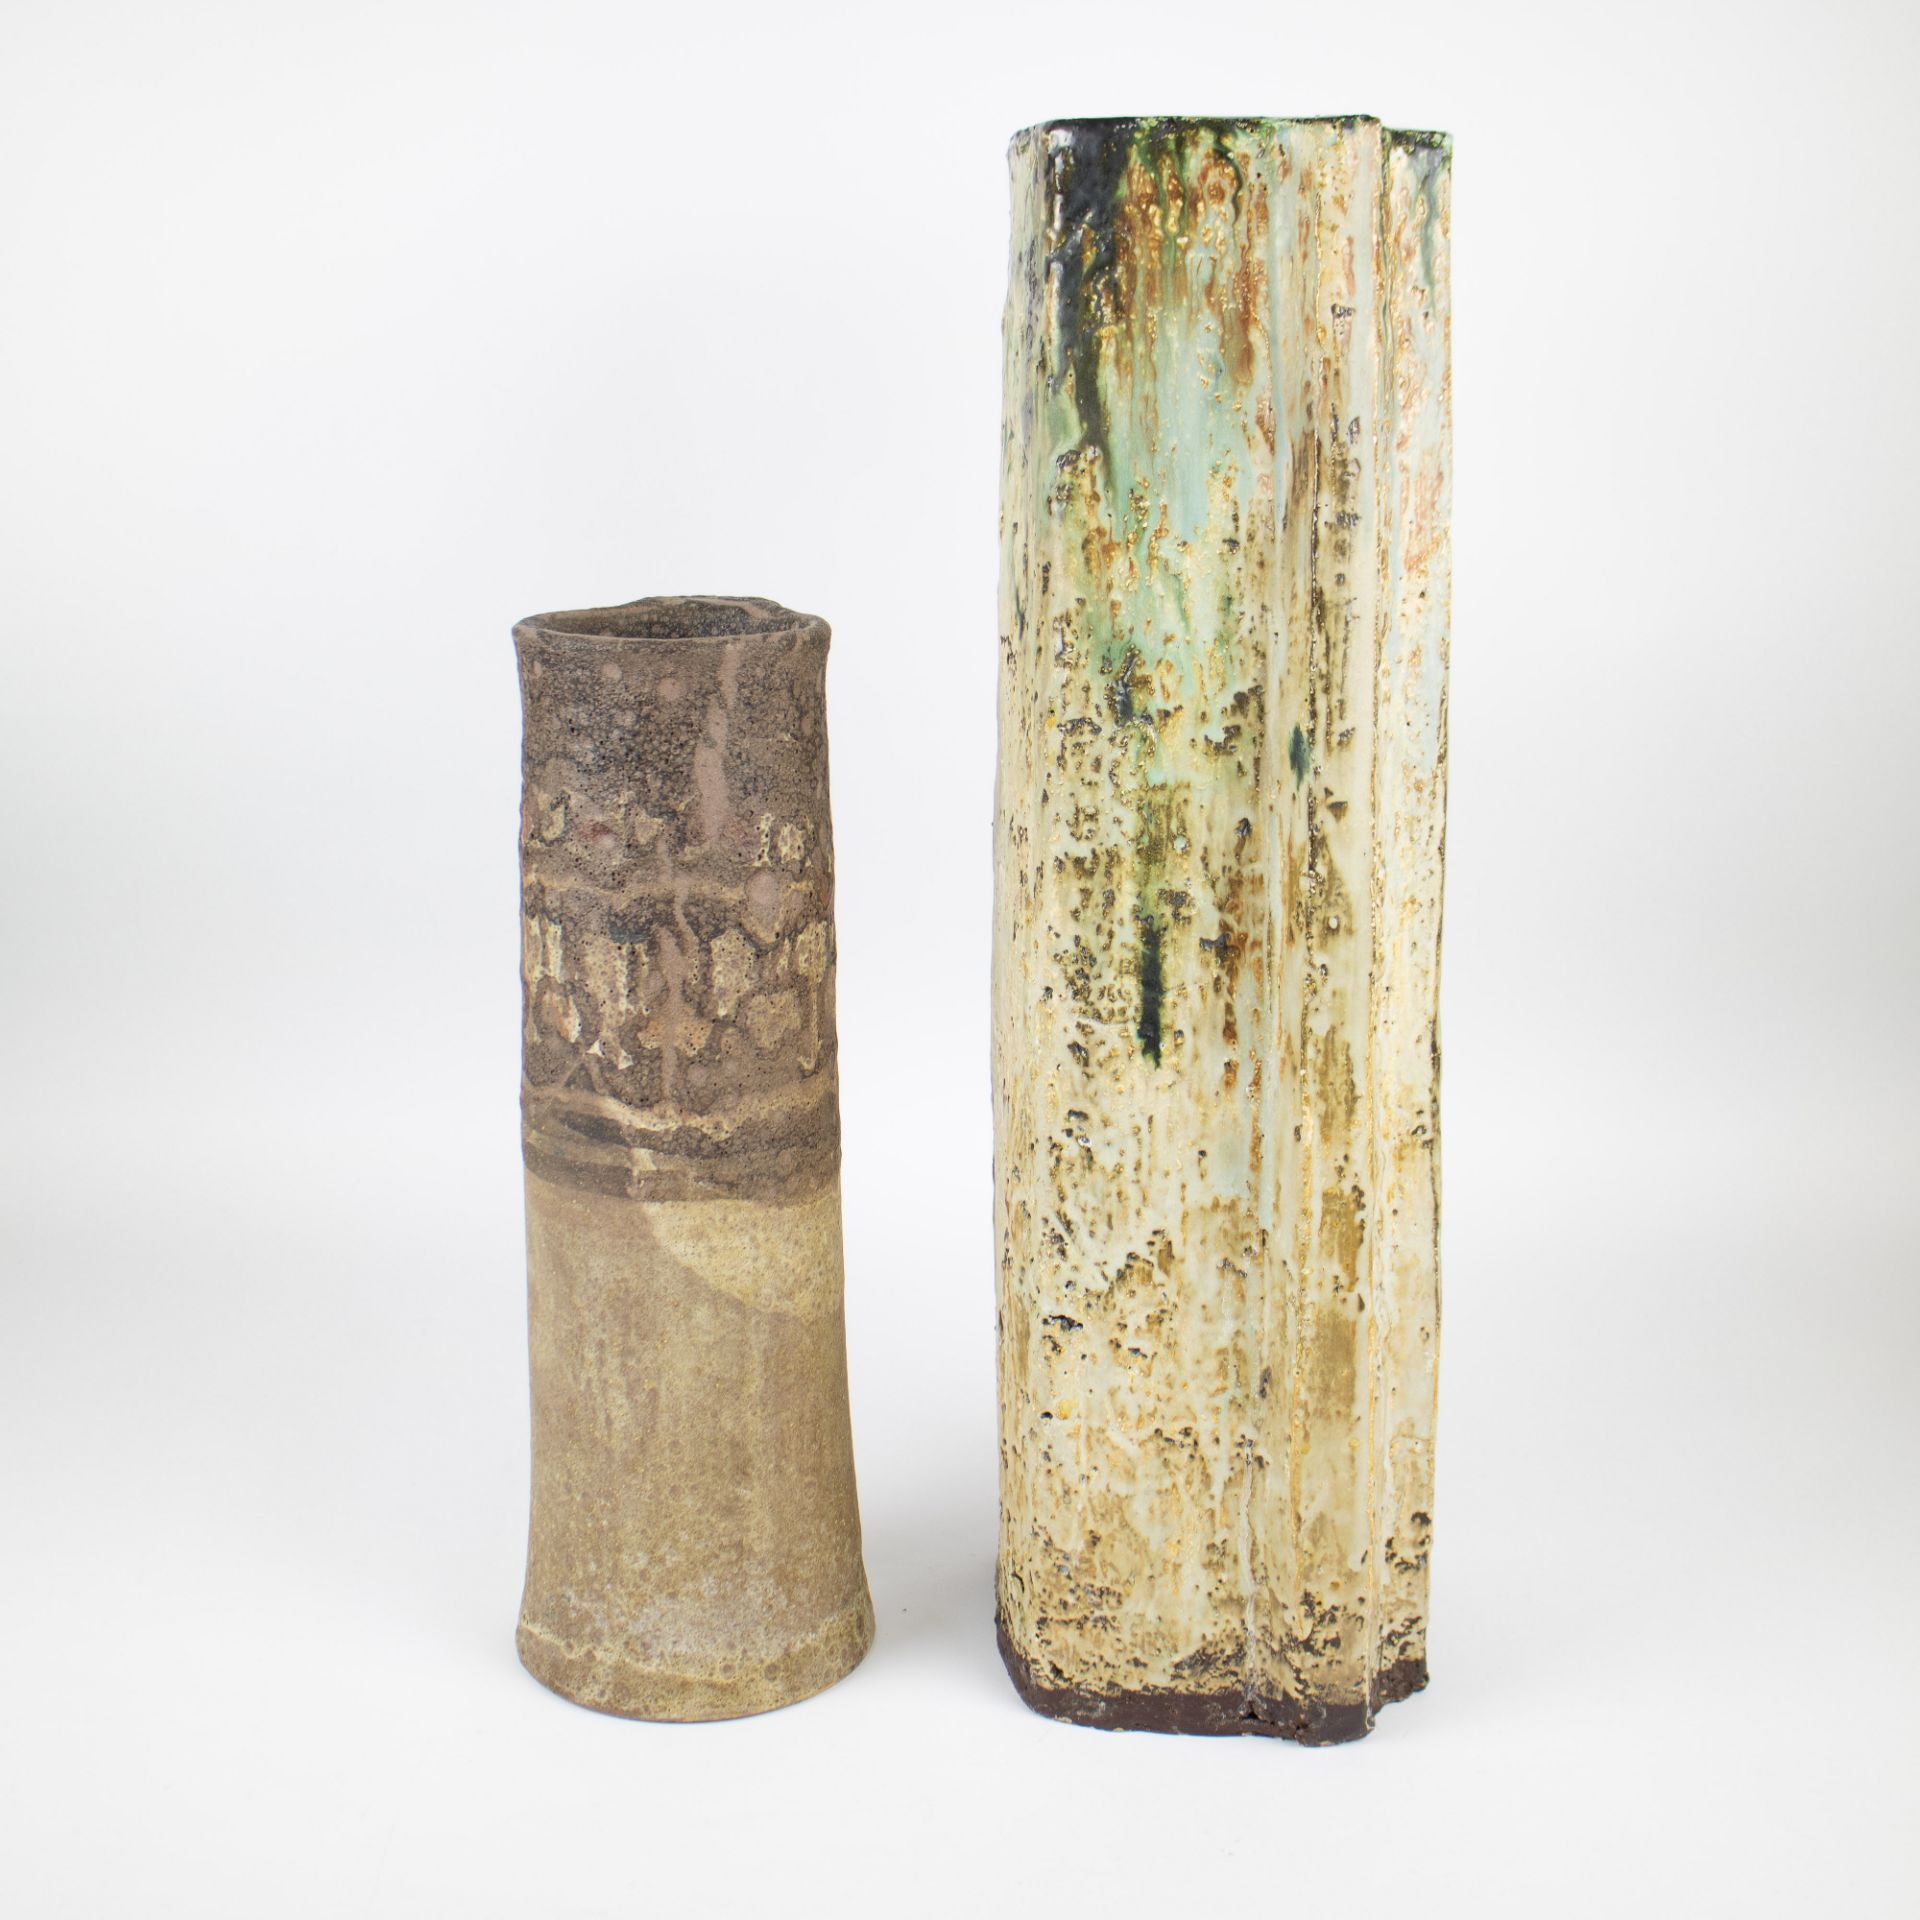 2 ceramic vases Schäffenacker and Werkstâtten - Image 2 of 5